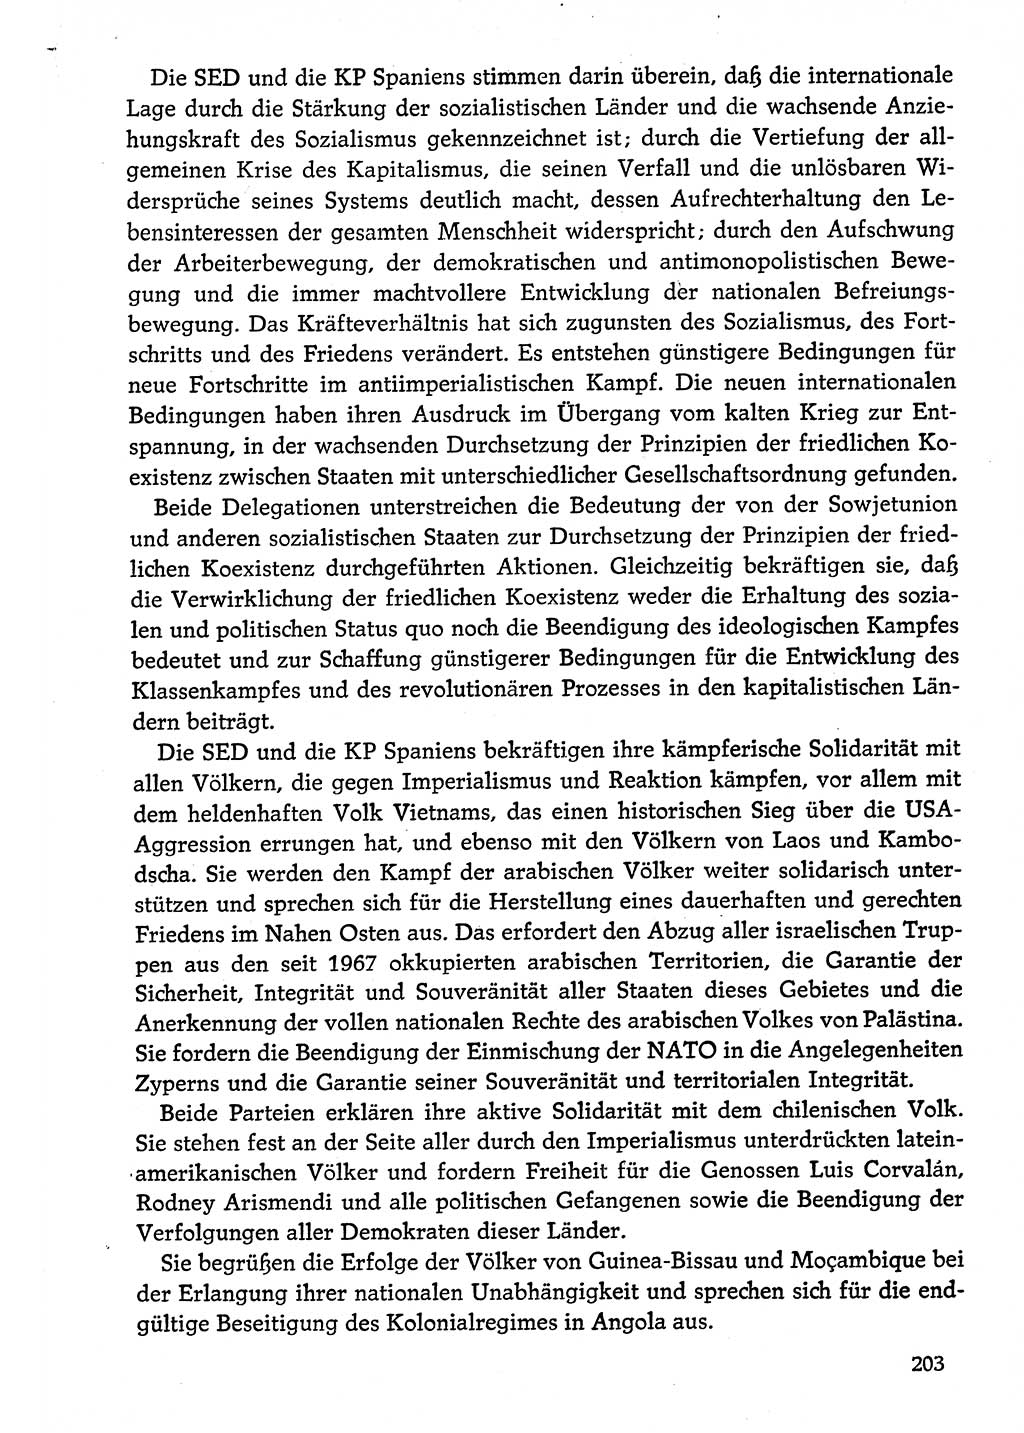 Dokumente der Sozialistischen Einheitspartei Deutschlands (SED) [Deutsche Demokratische Republik (DDR)] 1974-1975, Seite 203 (Dok. SED DDR 1978, Bd. ⅩⅤ, S. 203)